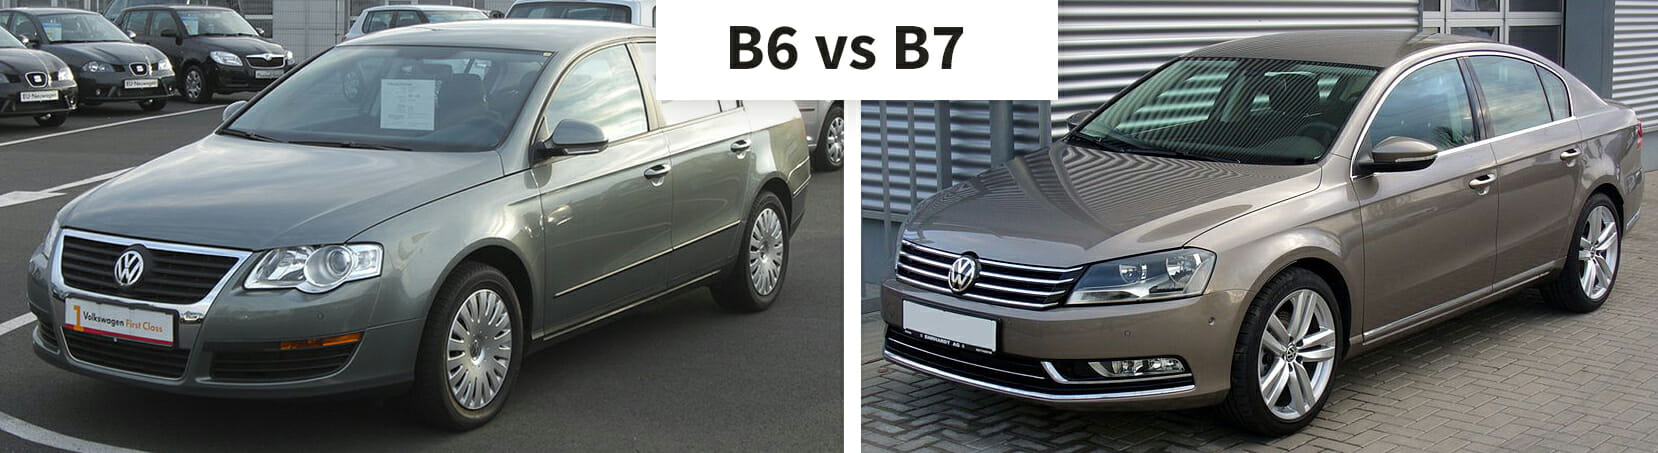 Używany Volkswagen Passat B7 – czy warto go kupić?